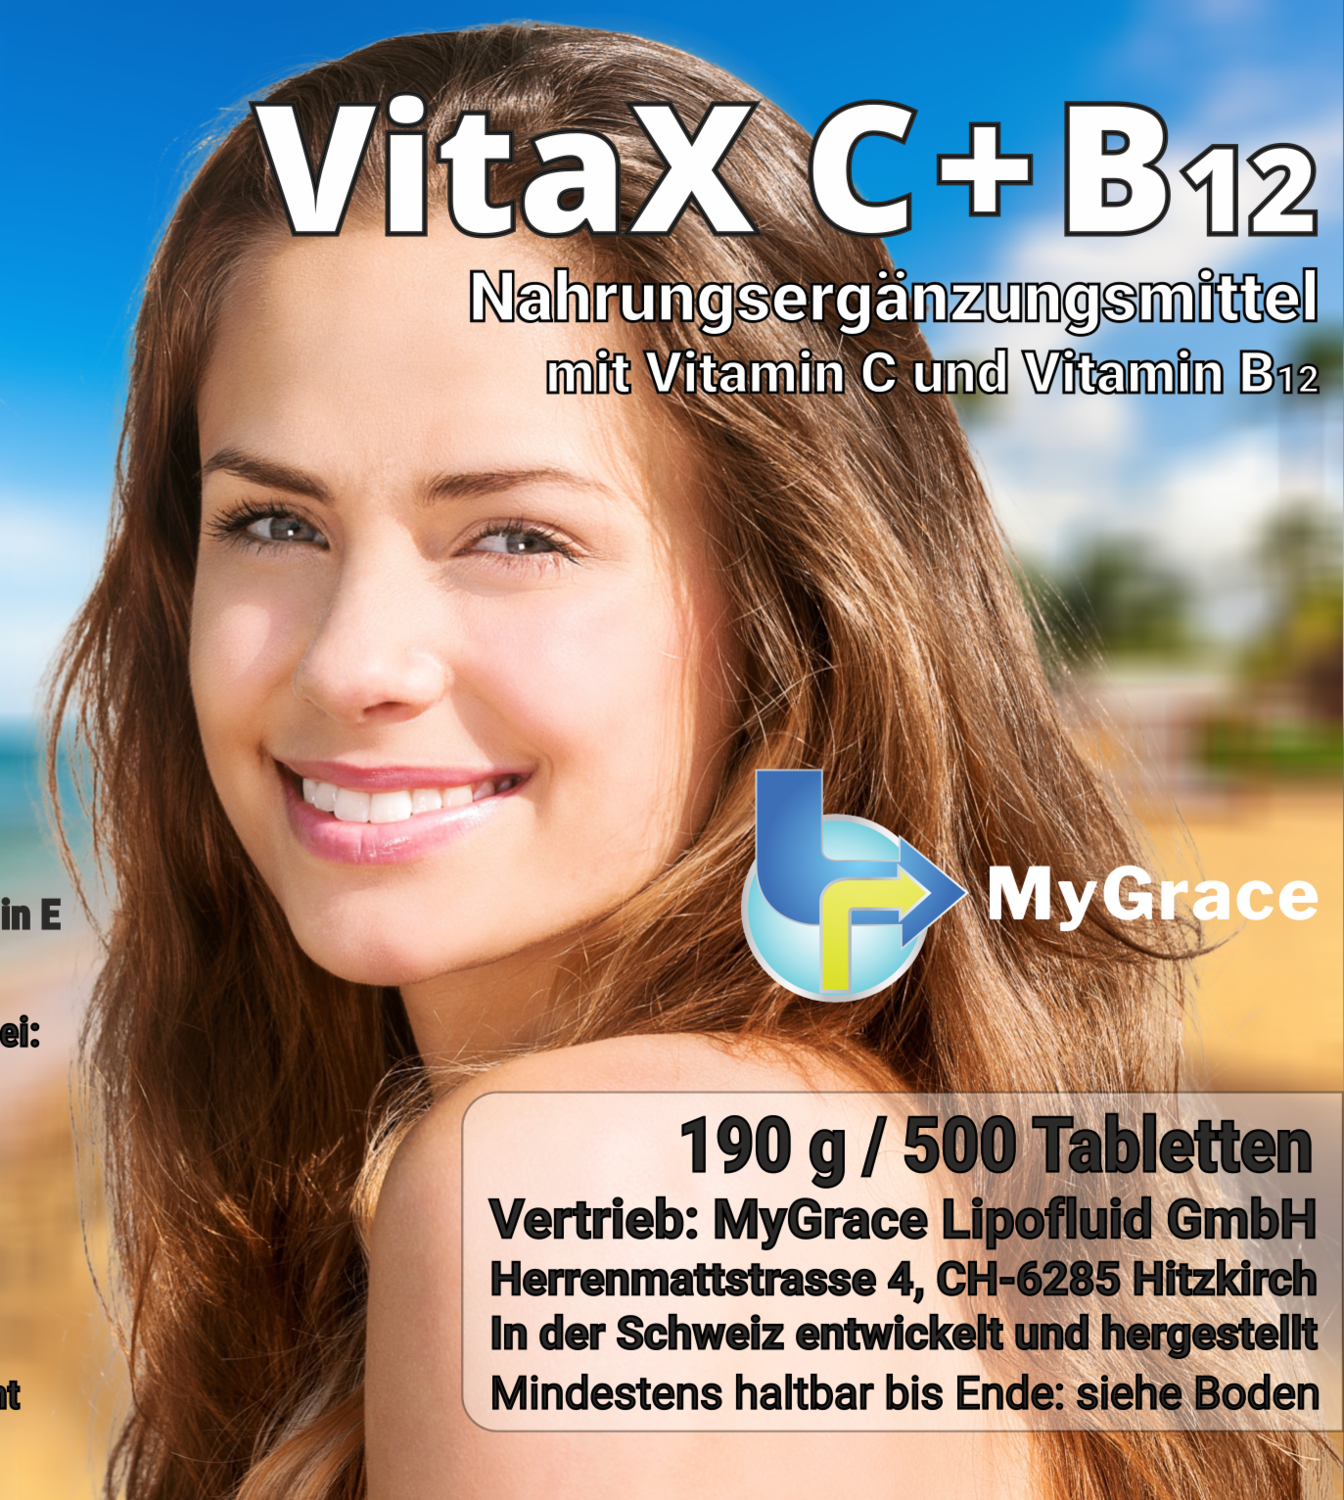 MyGrace VitaX C+B12, 500 Tabletten mit Vitamin C und B12